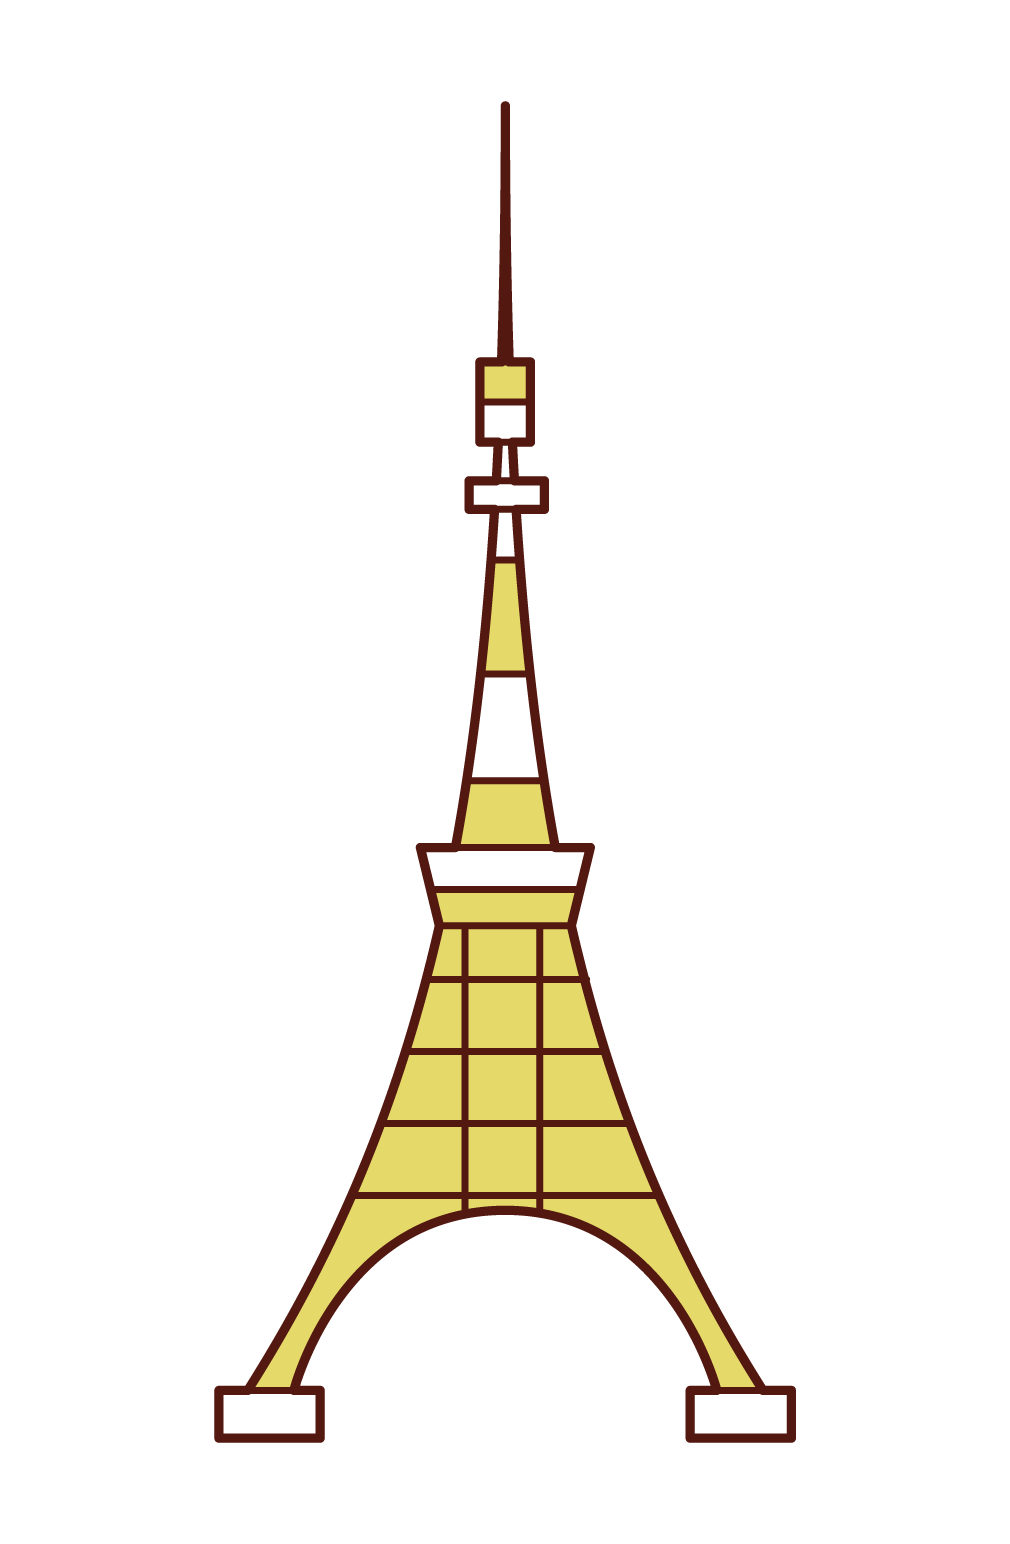 東京タワーのイラスト